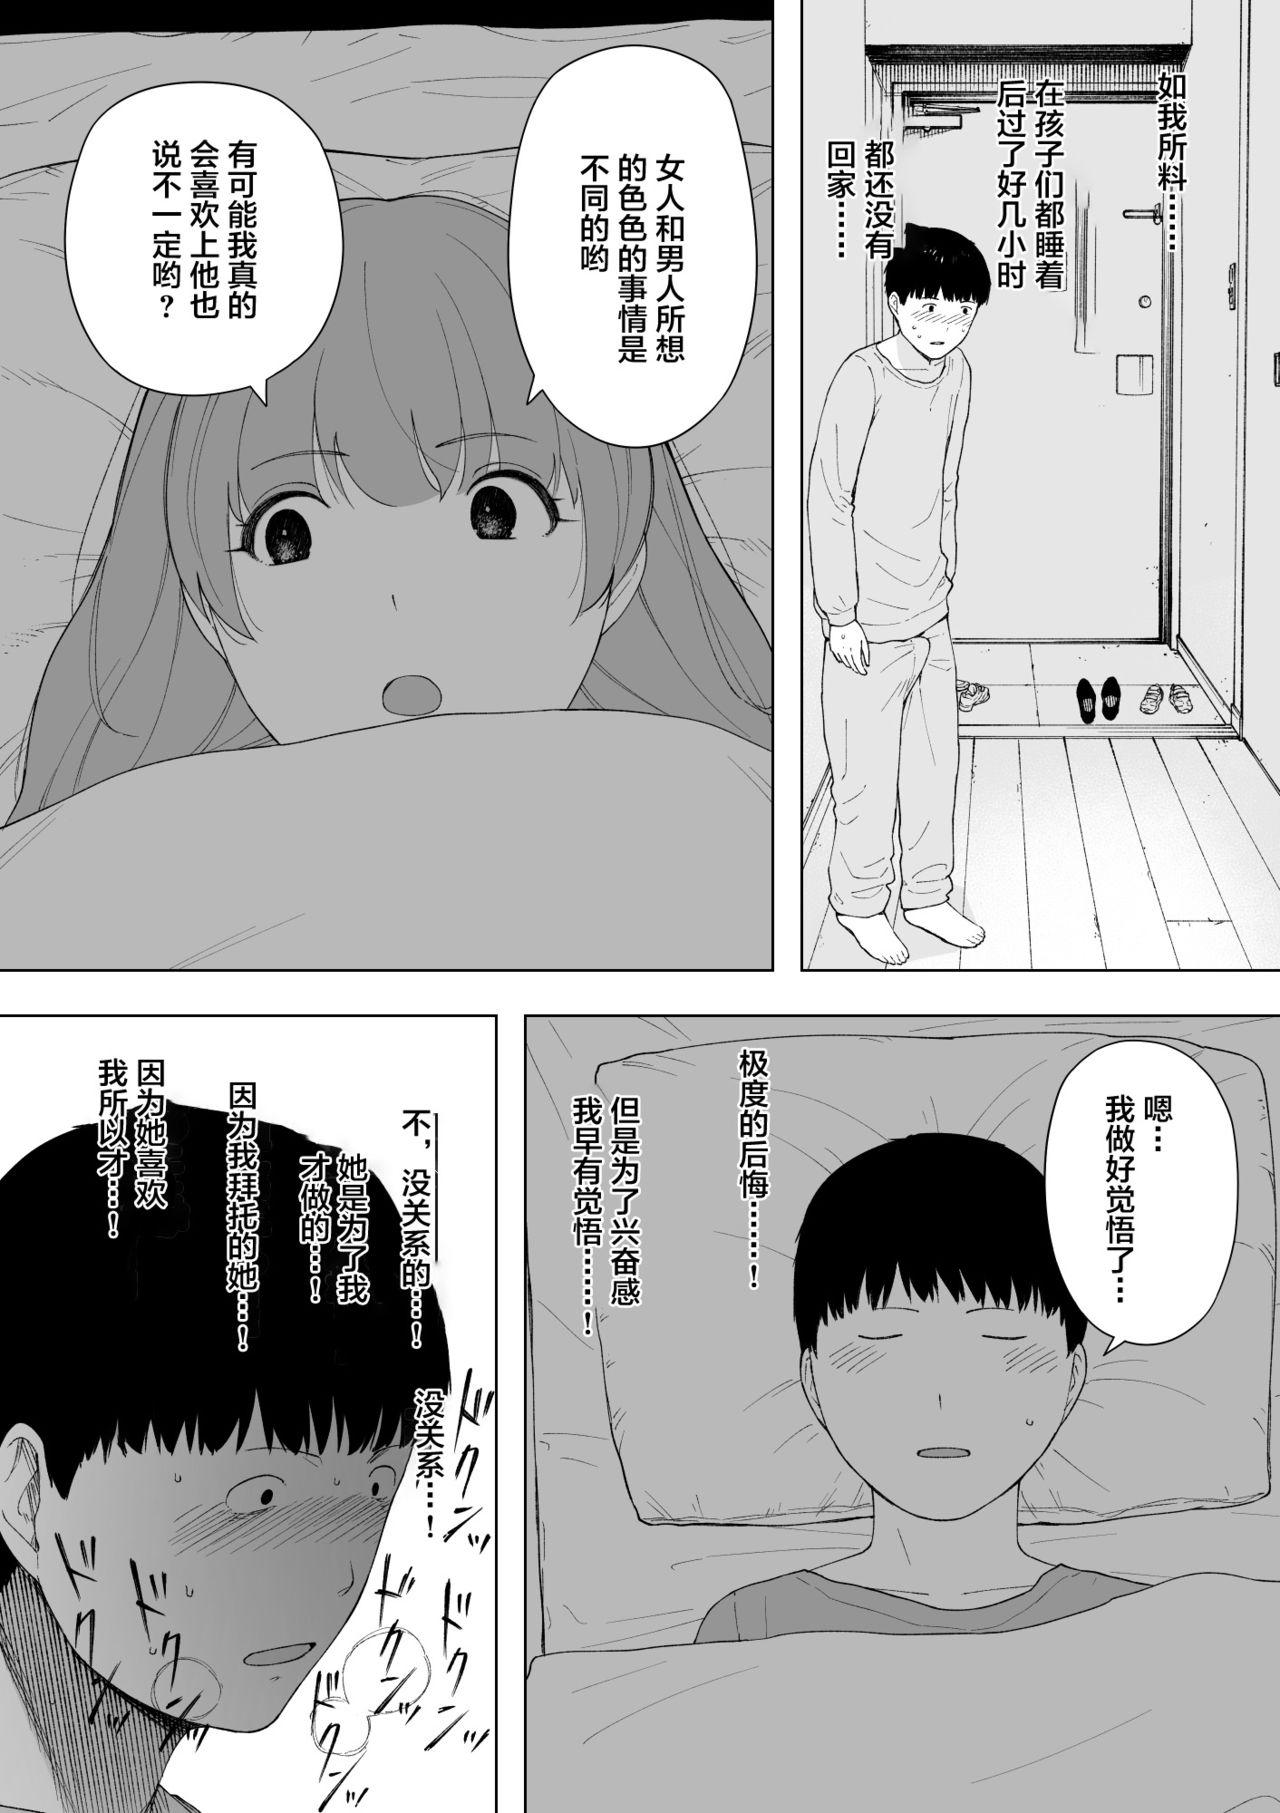 Step Aisai, Doui no Ue, Netorare 5 - Original Boy - Page 8